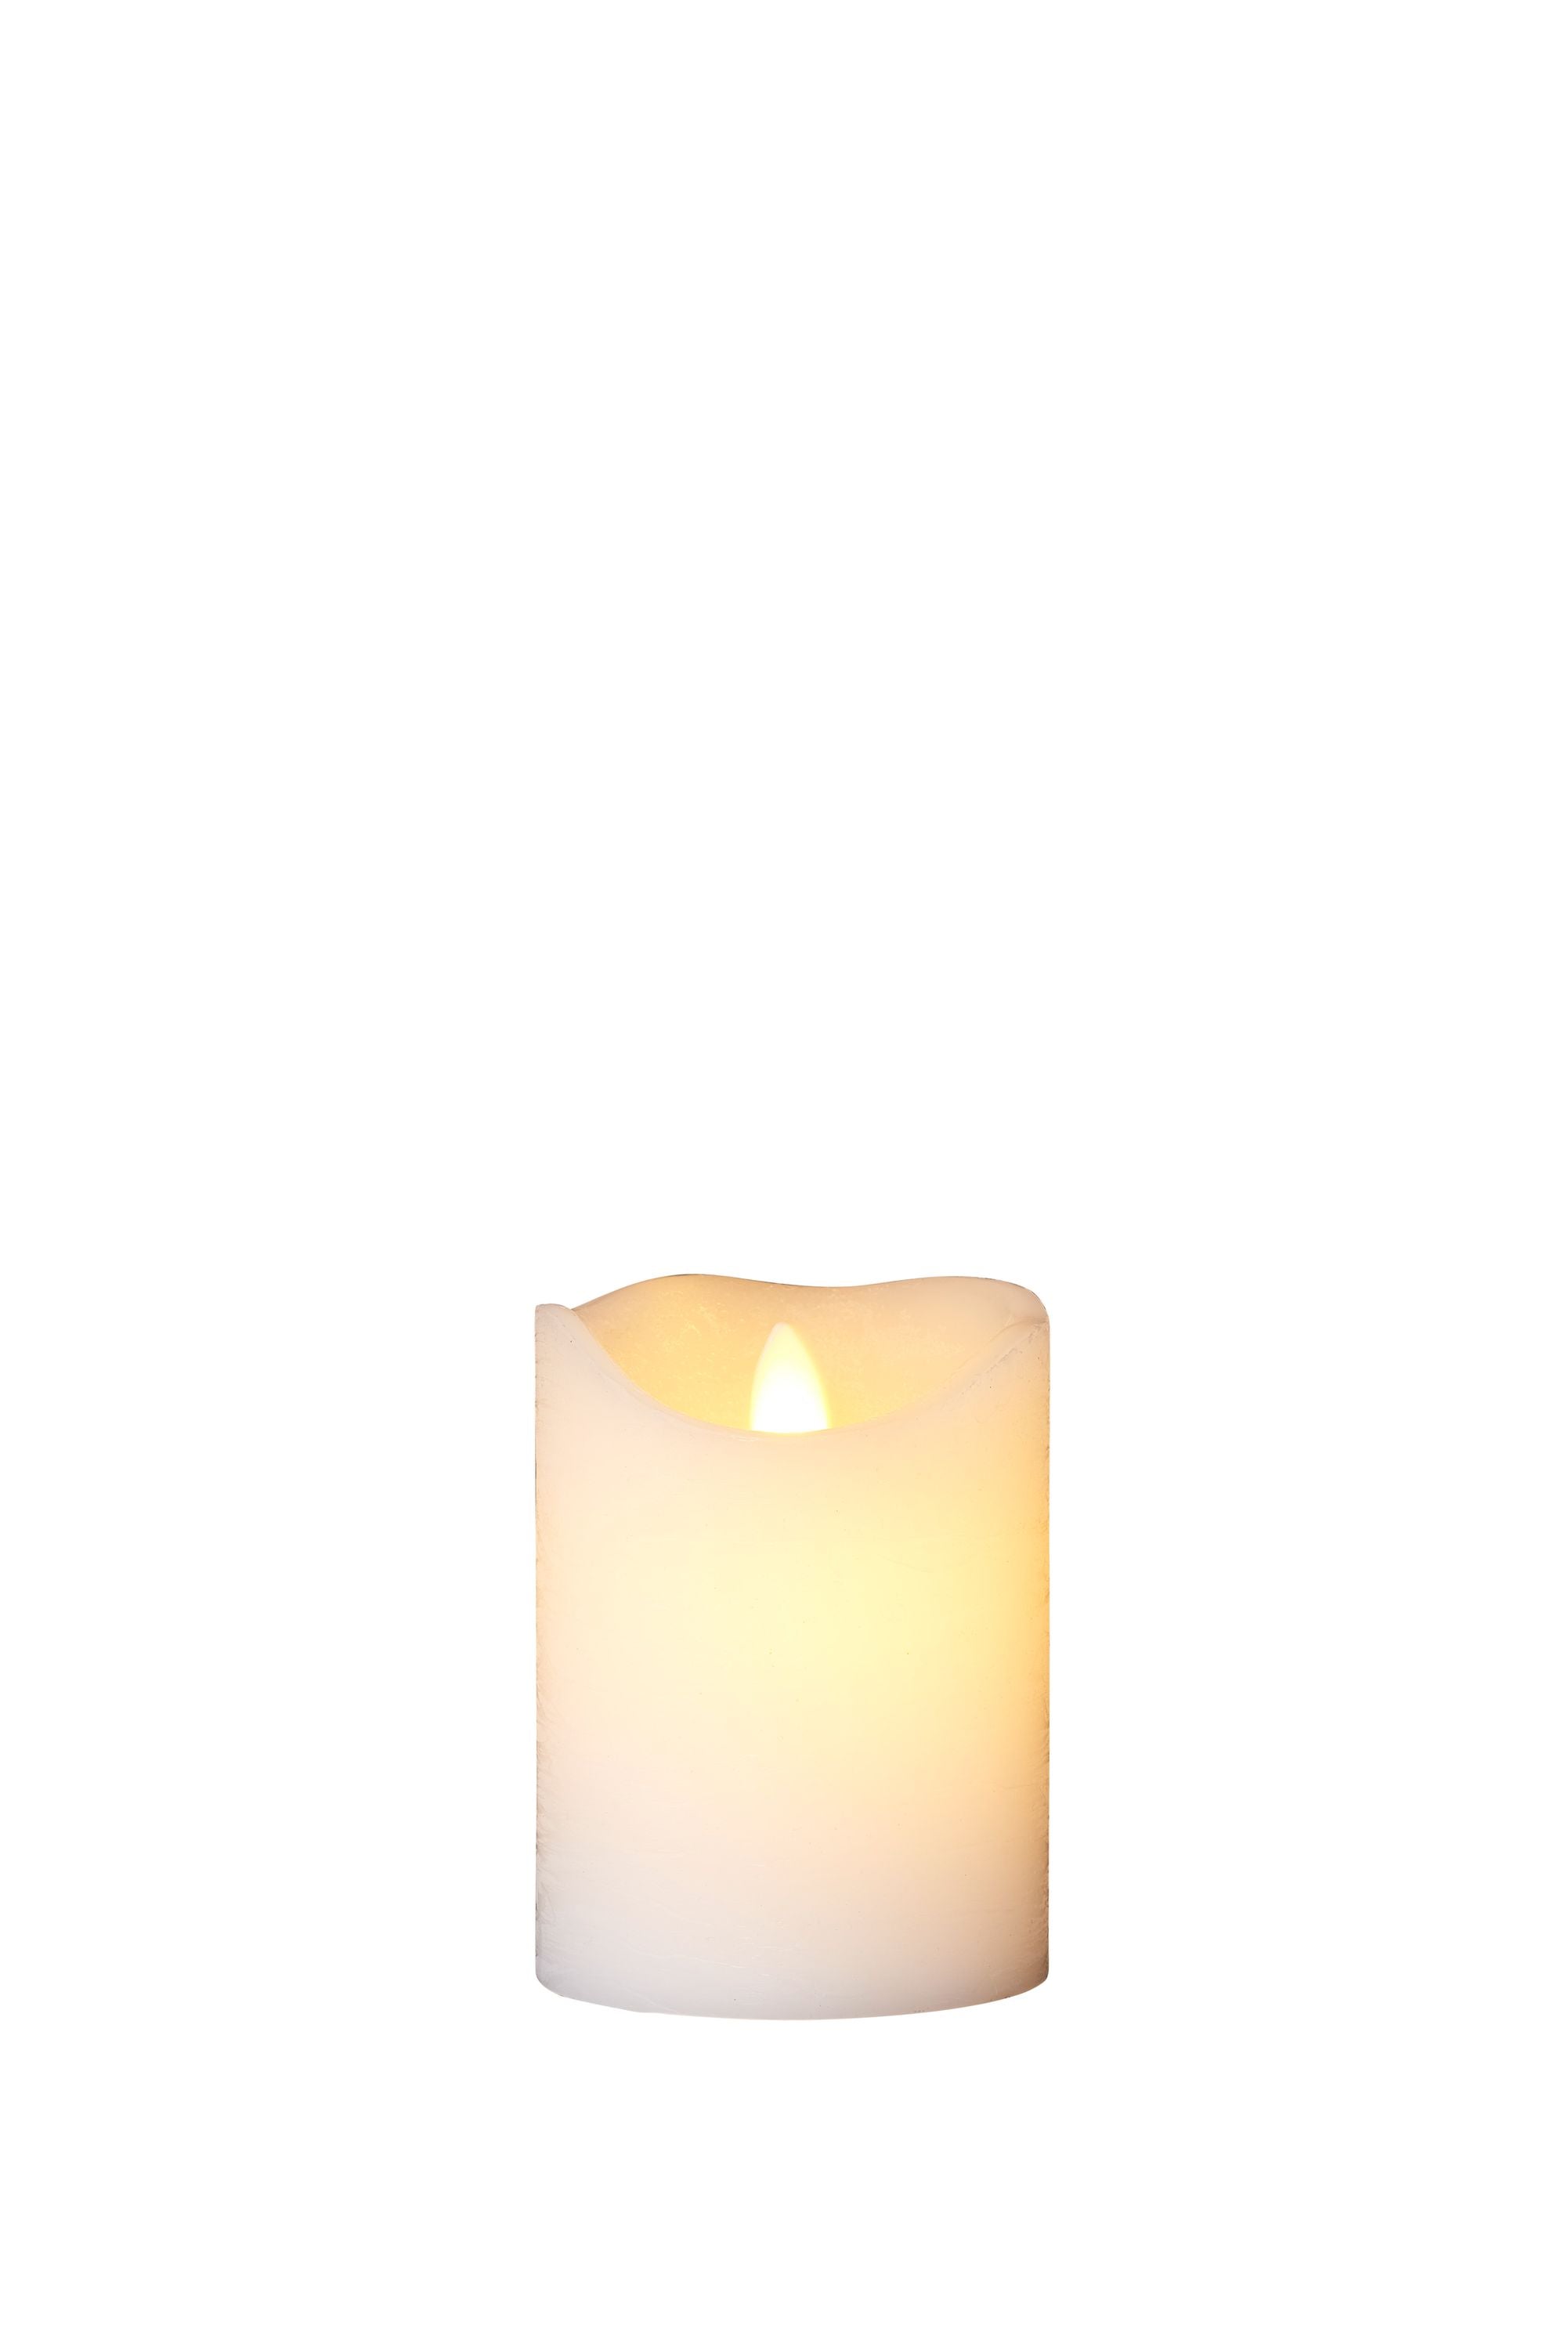 Sirius Sara ladattava LED -kynttilä valkoinen, Ø7,5x H10,5 cm